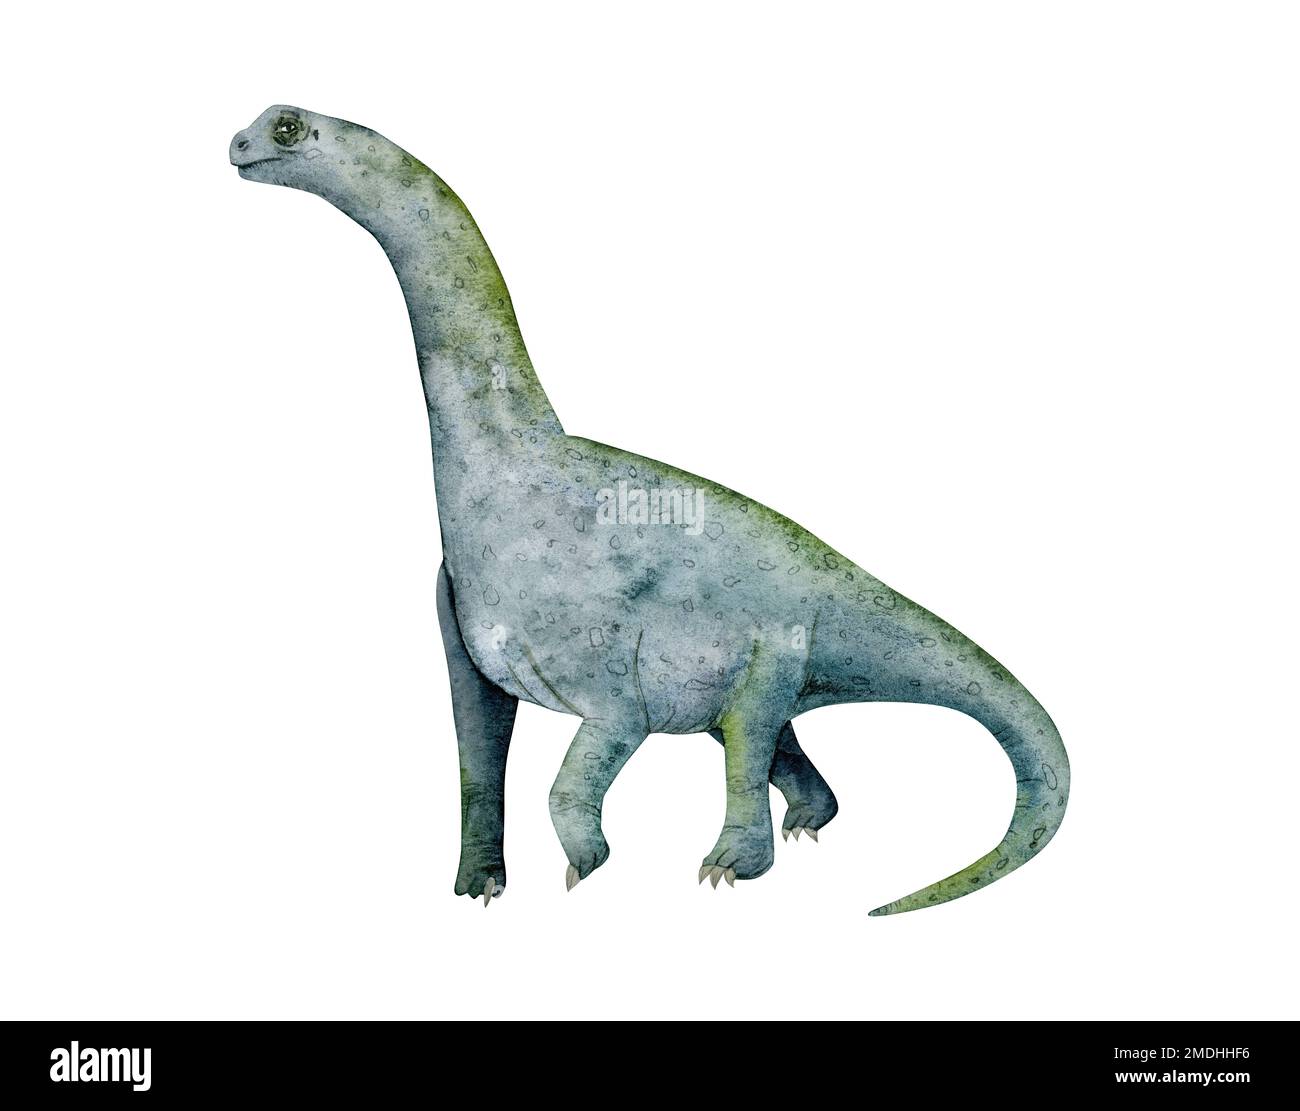 Camarasaurus sauropode dinosaure aquarelle illustration isolée sur fond blanc. Dessin de Brachiosaurus, animal herbivore préhistorique Banque D'Images